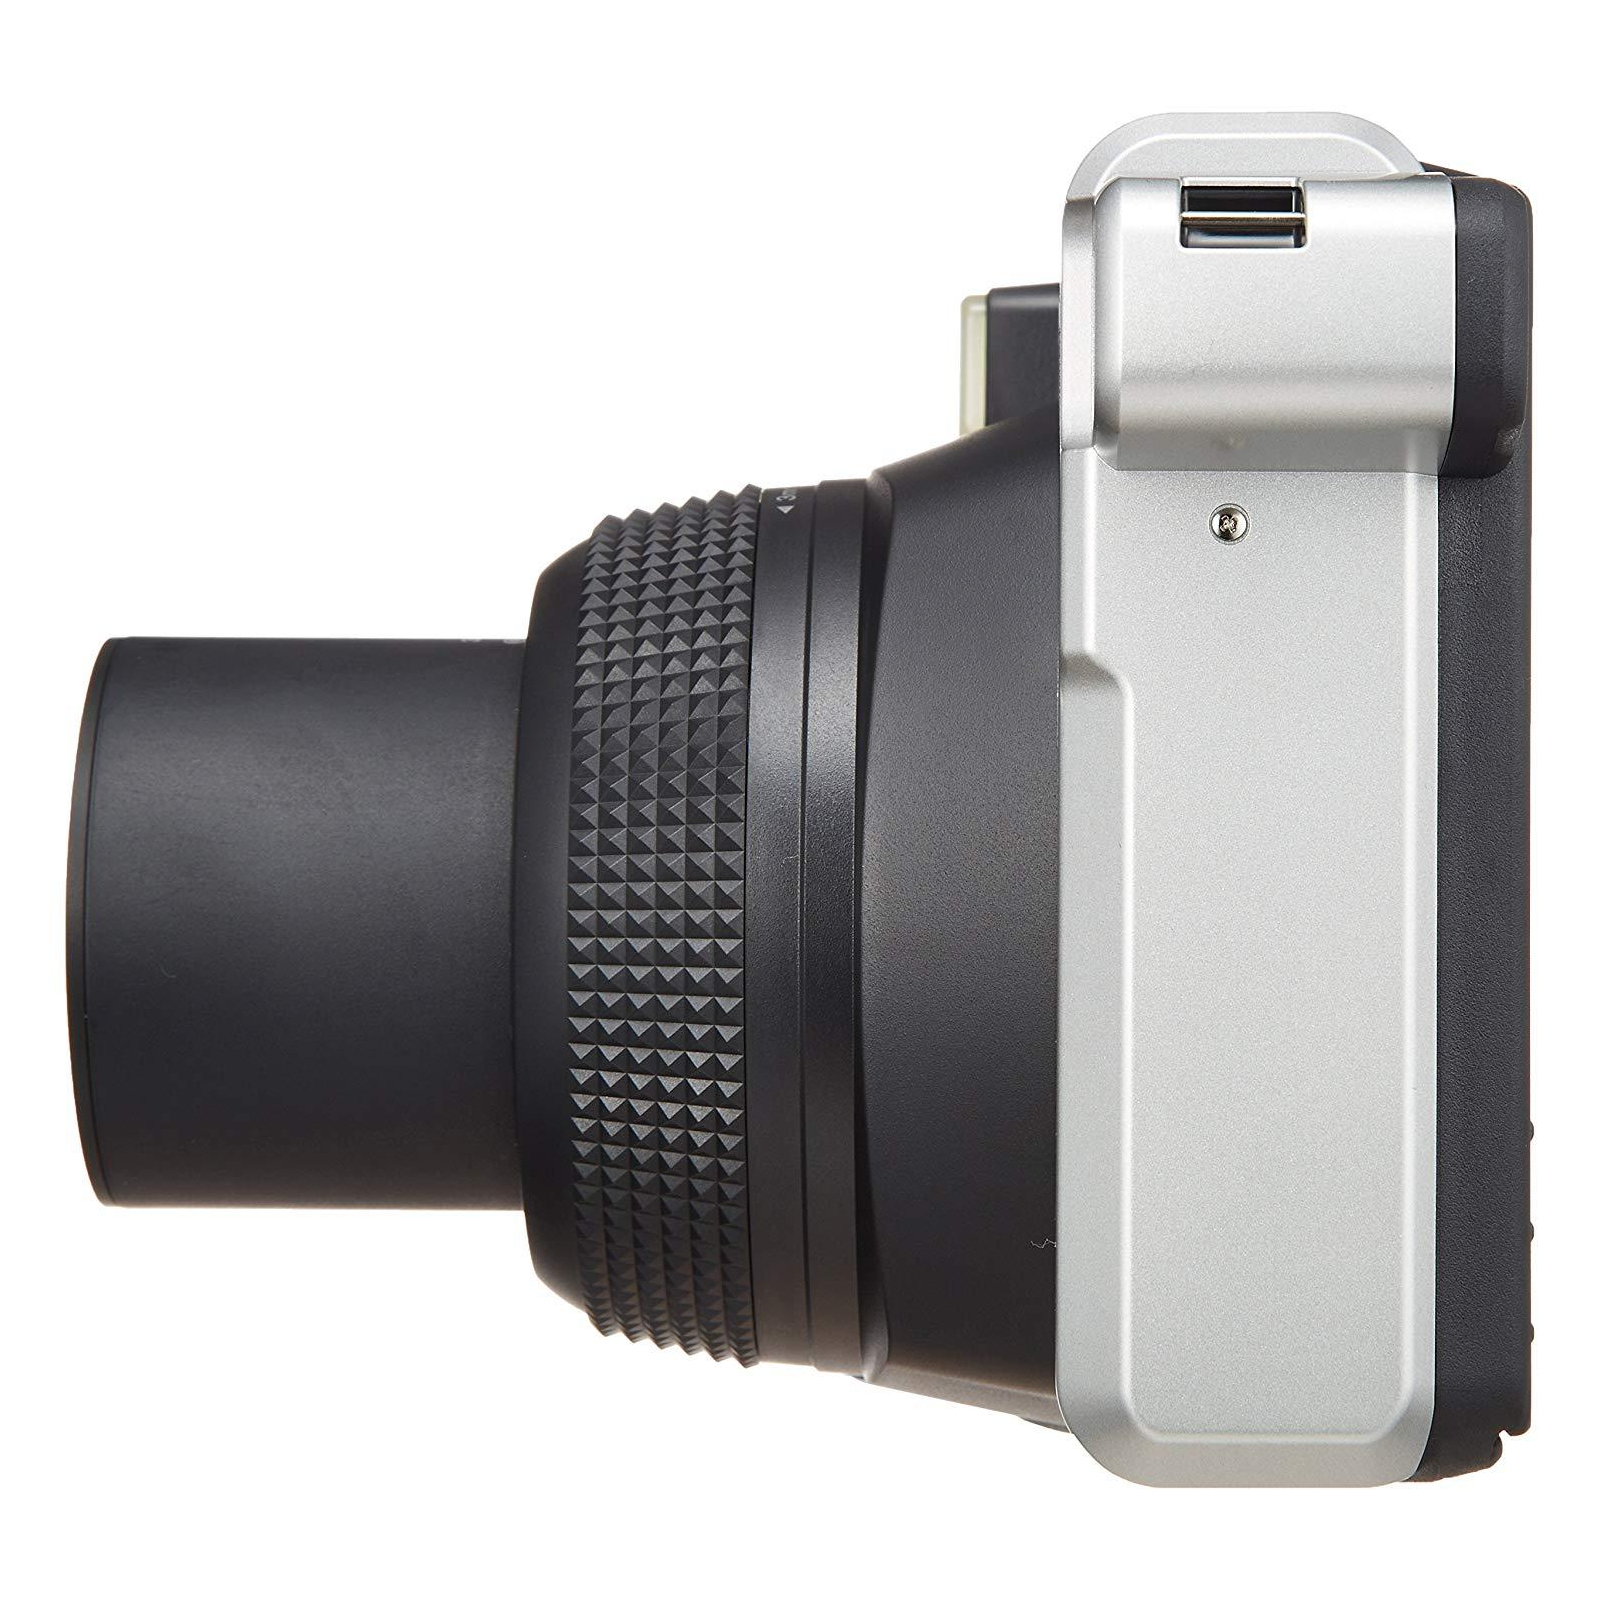 Камера моментальной печати Fujifilm Instax WIDE 300 Instant camera (16445795) изображение 10